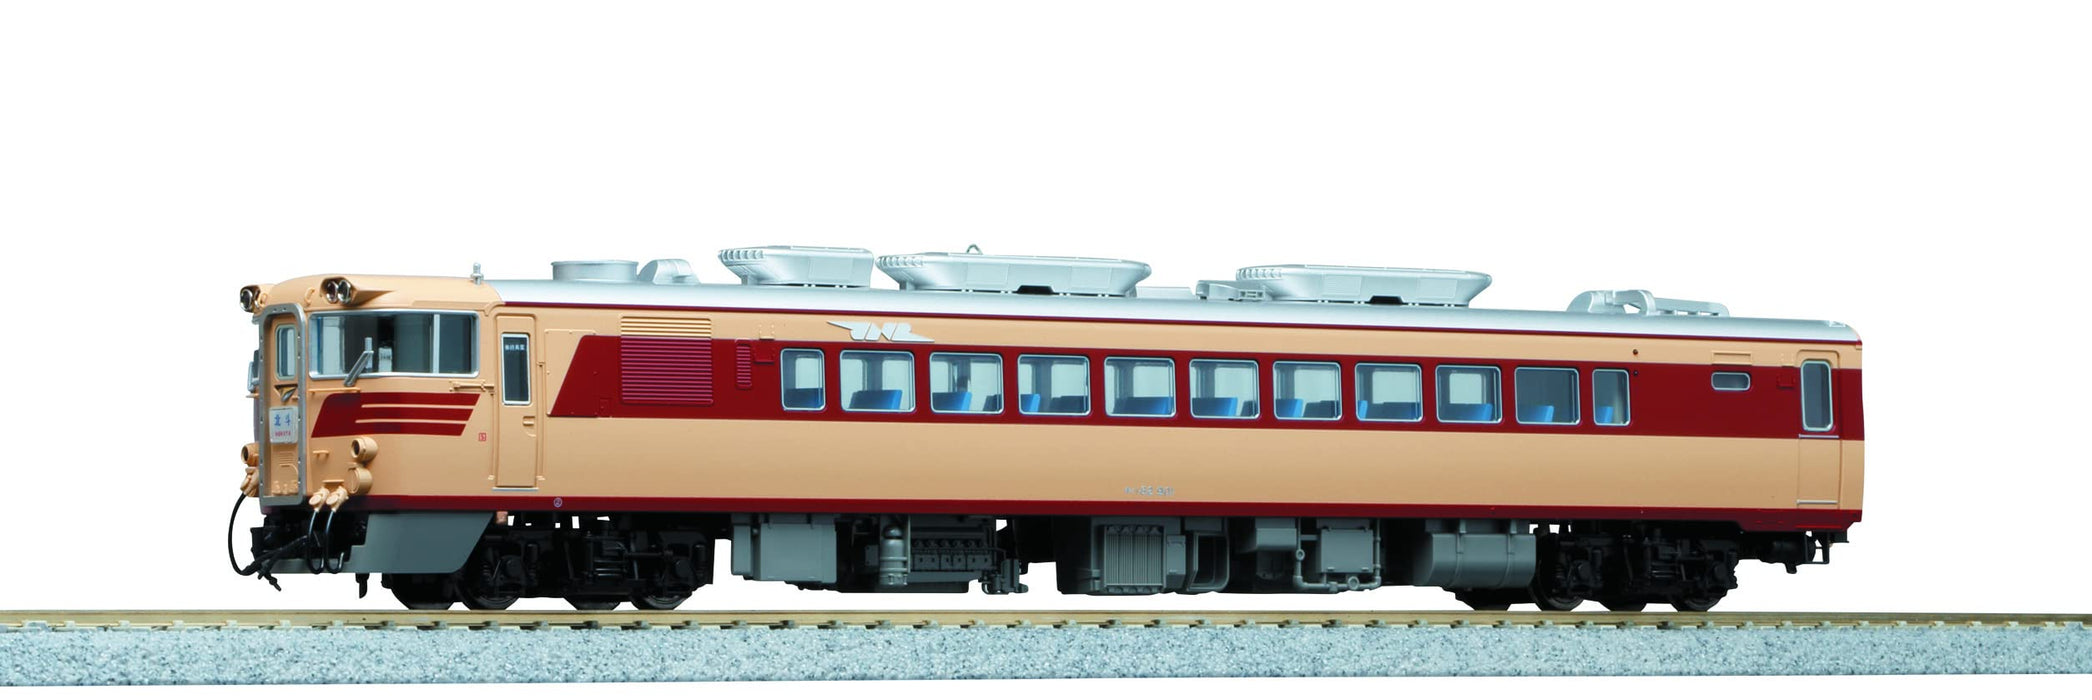 Kato Kiha82 900 1-613 Ho Spur Dieselwagen - Elite Eisenbahnmodell